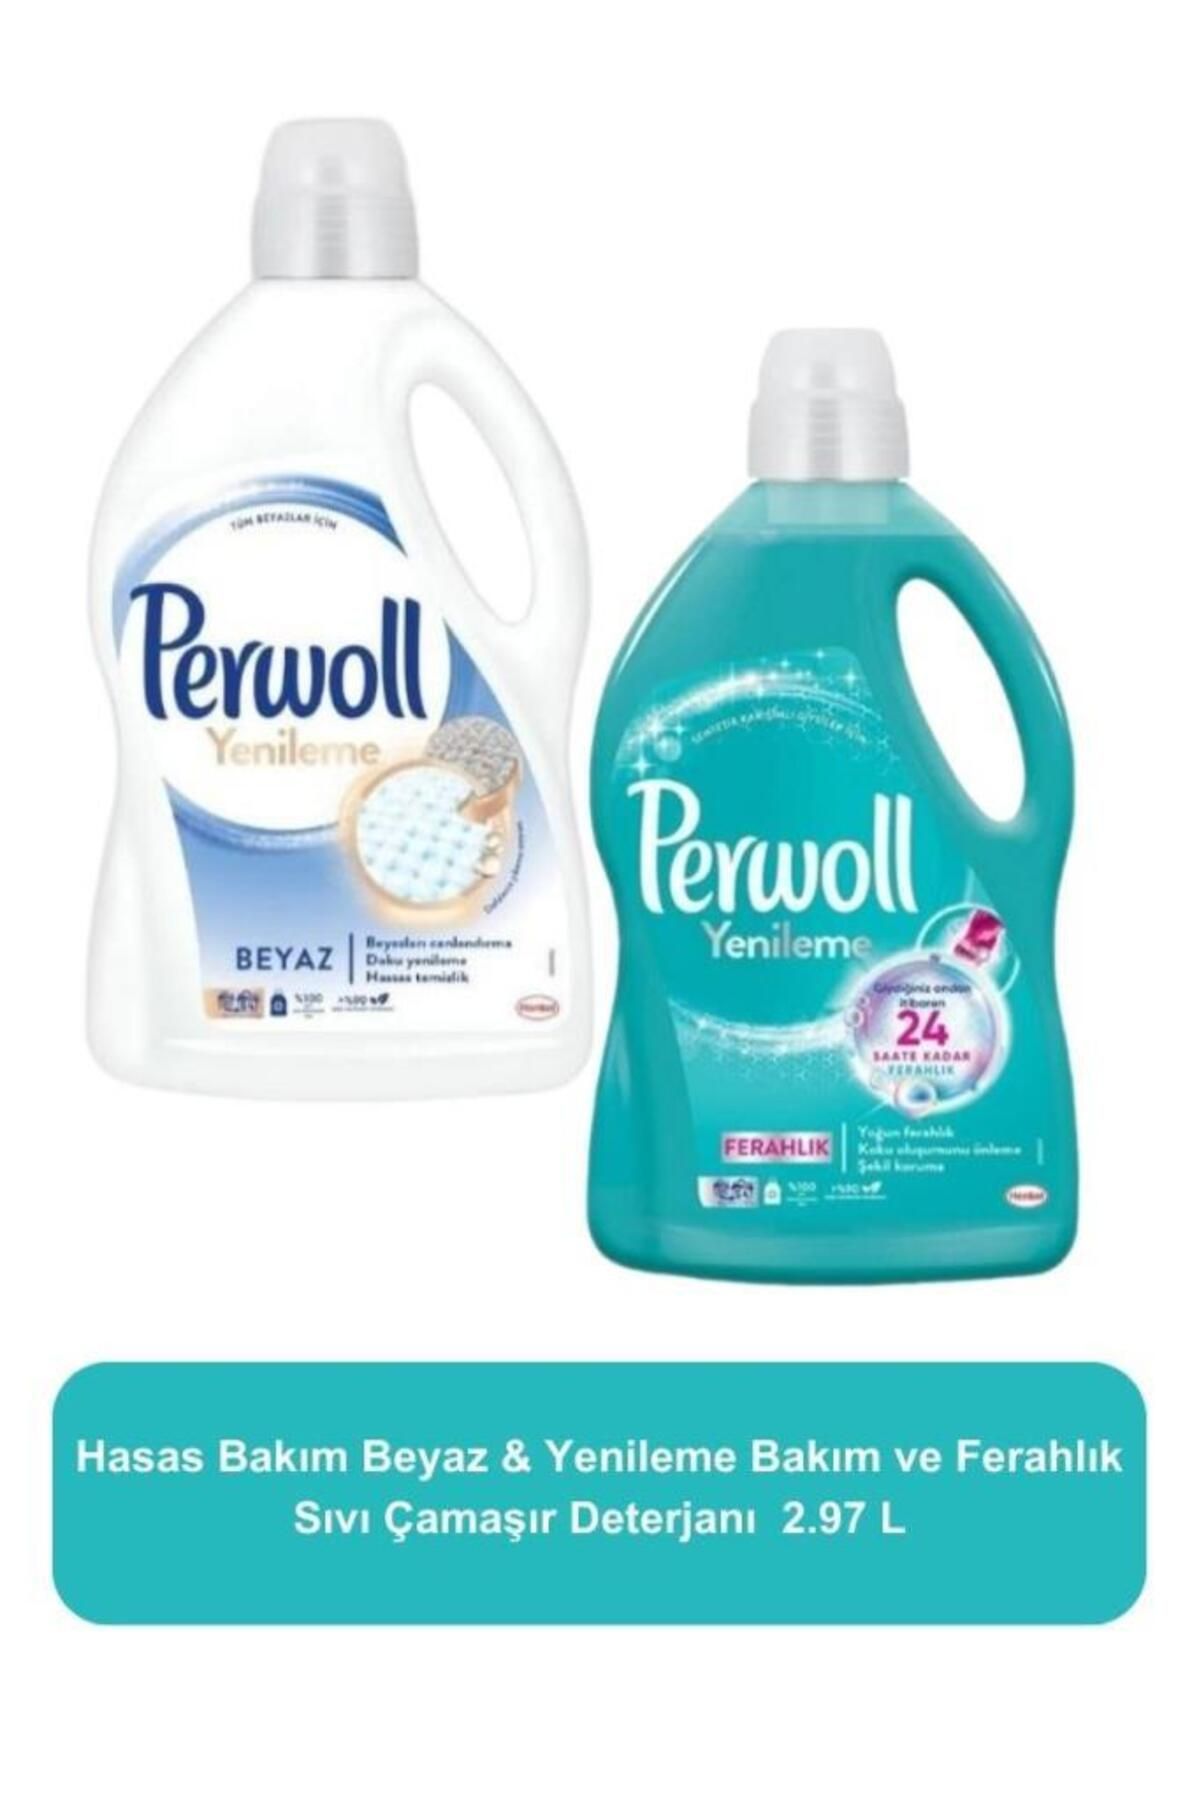 Perwoll Hassas Bakım Sıvı Çamaşır Deterjanı Beyaz 2.97 L Hassas Sıvı Çamaşır Deterjanı Bakım ve Ferahlık 2